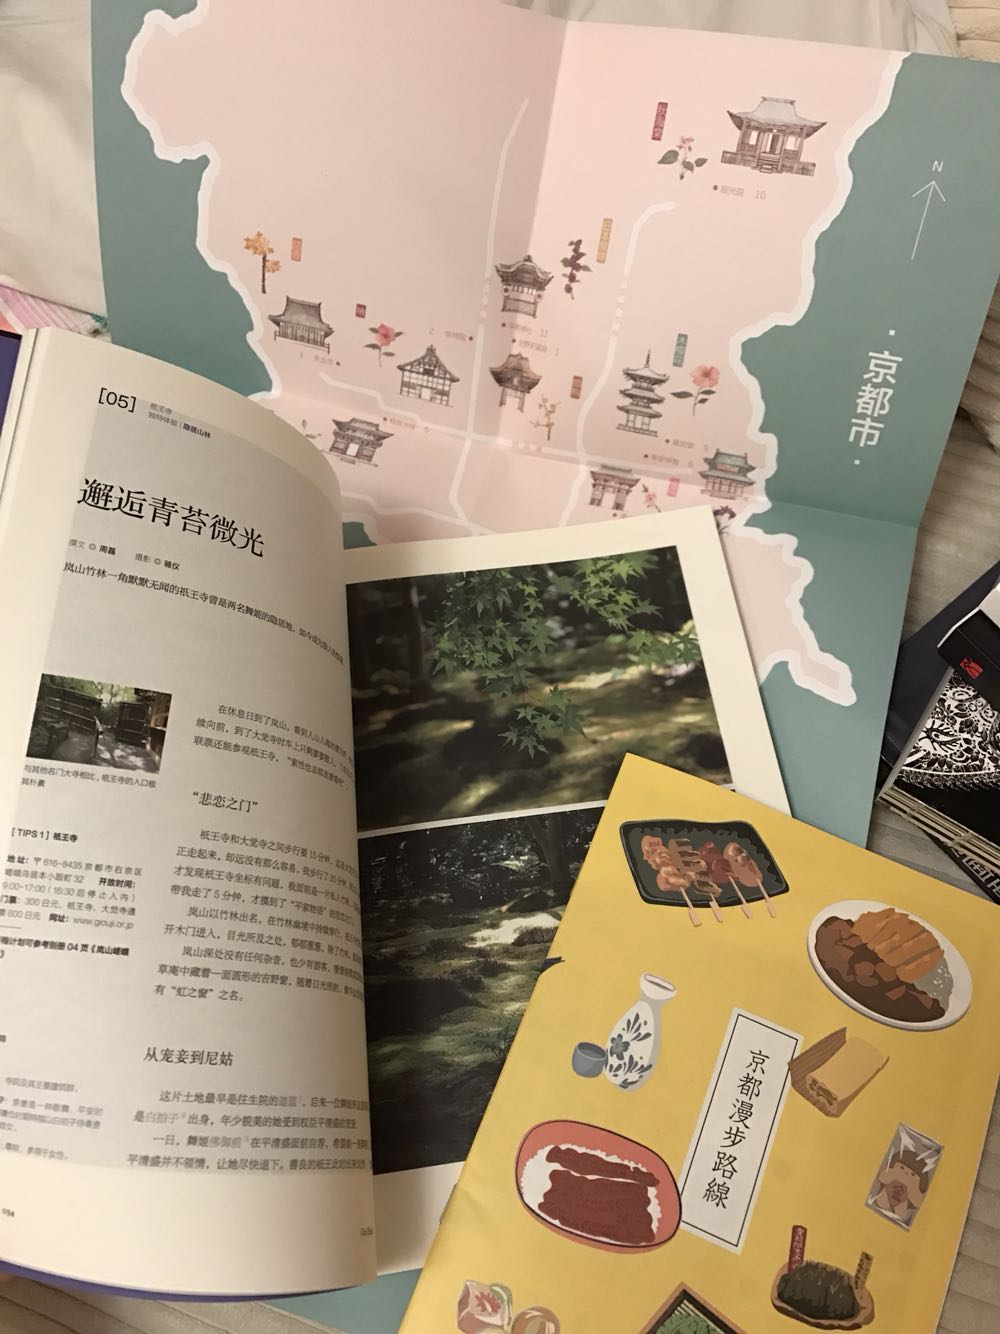 不错不错，内容很丰富，对京都的介绍很详细，还有京都漫步路线的小本本. 非常喜欢